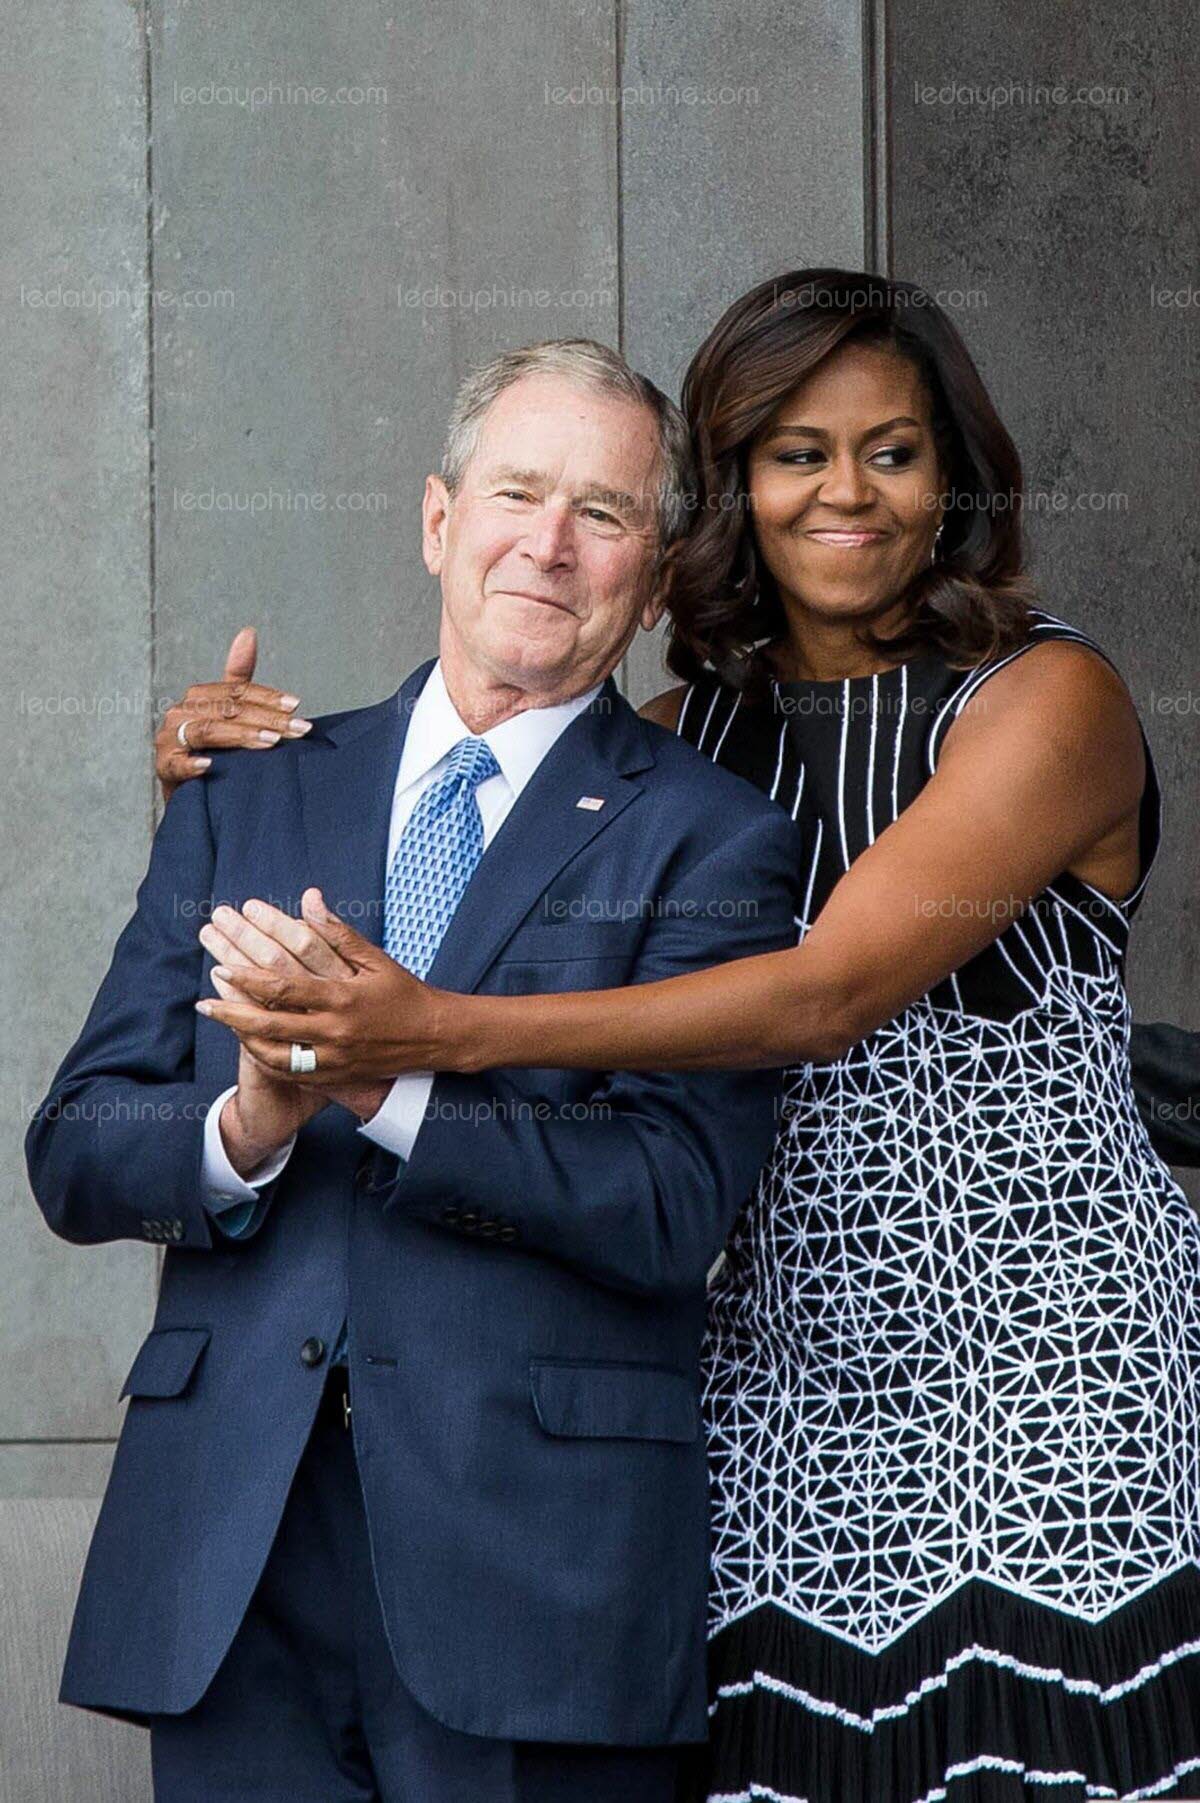 le-hug-tres-americain-entre-michelle-obama-et-george-w-bush-photo-afp-1474820130.jpg